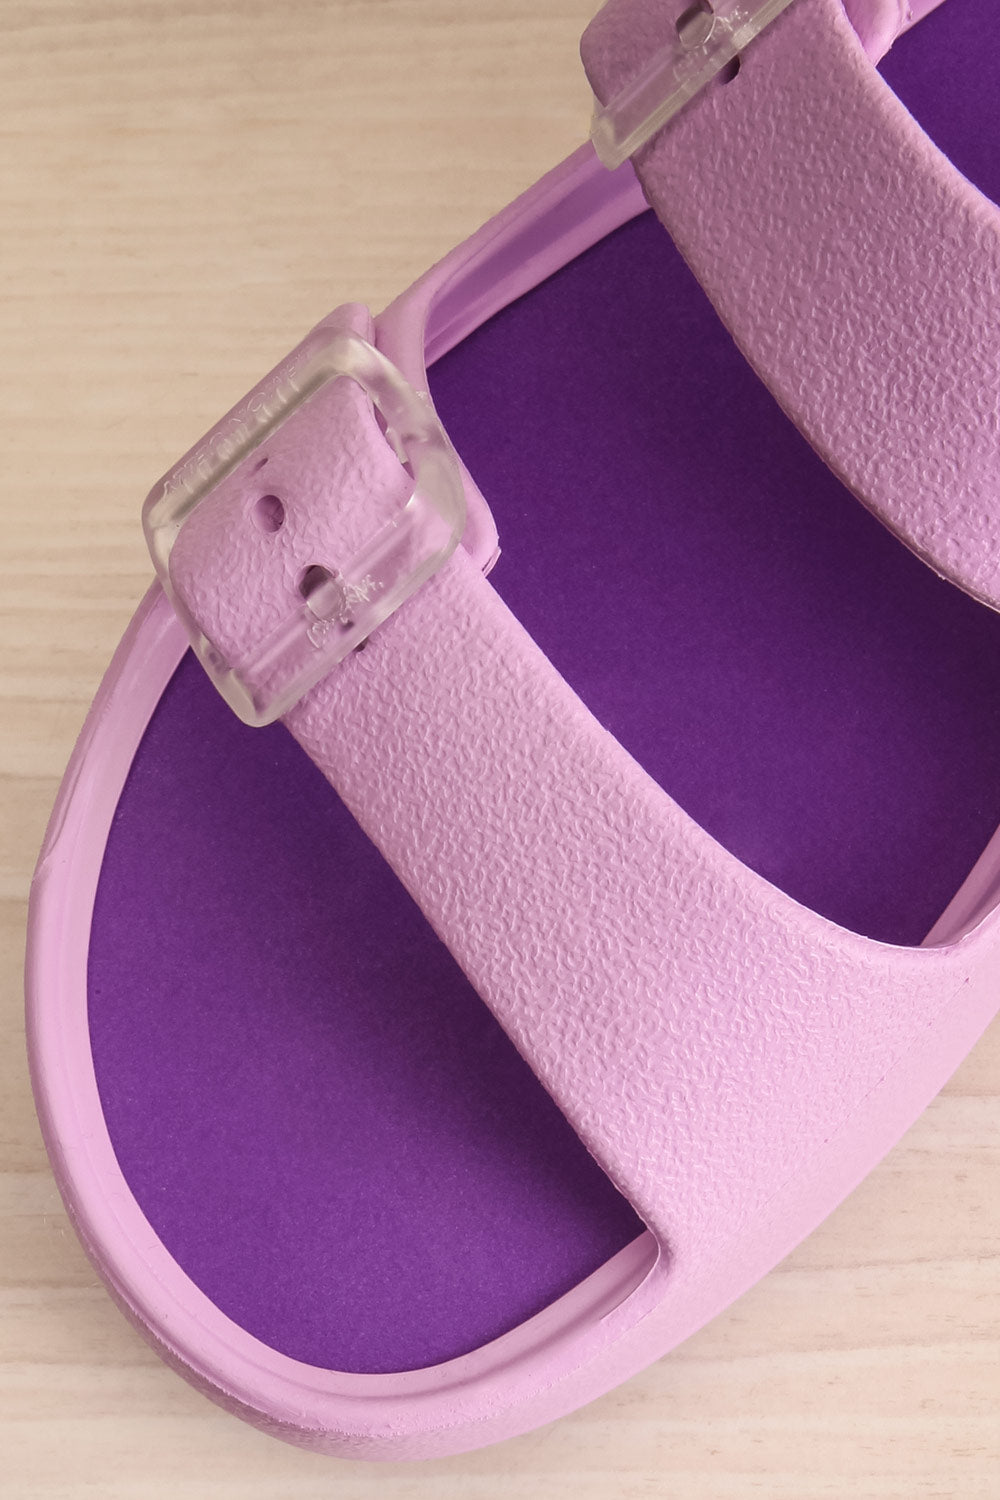 Fenix Lavender Double Buckle Platform Sandals | La petite garçonne flat close-up